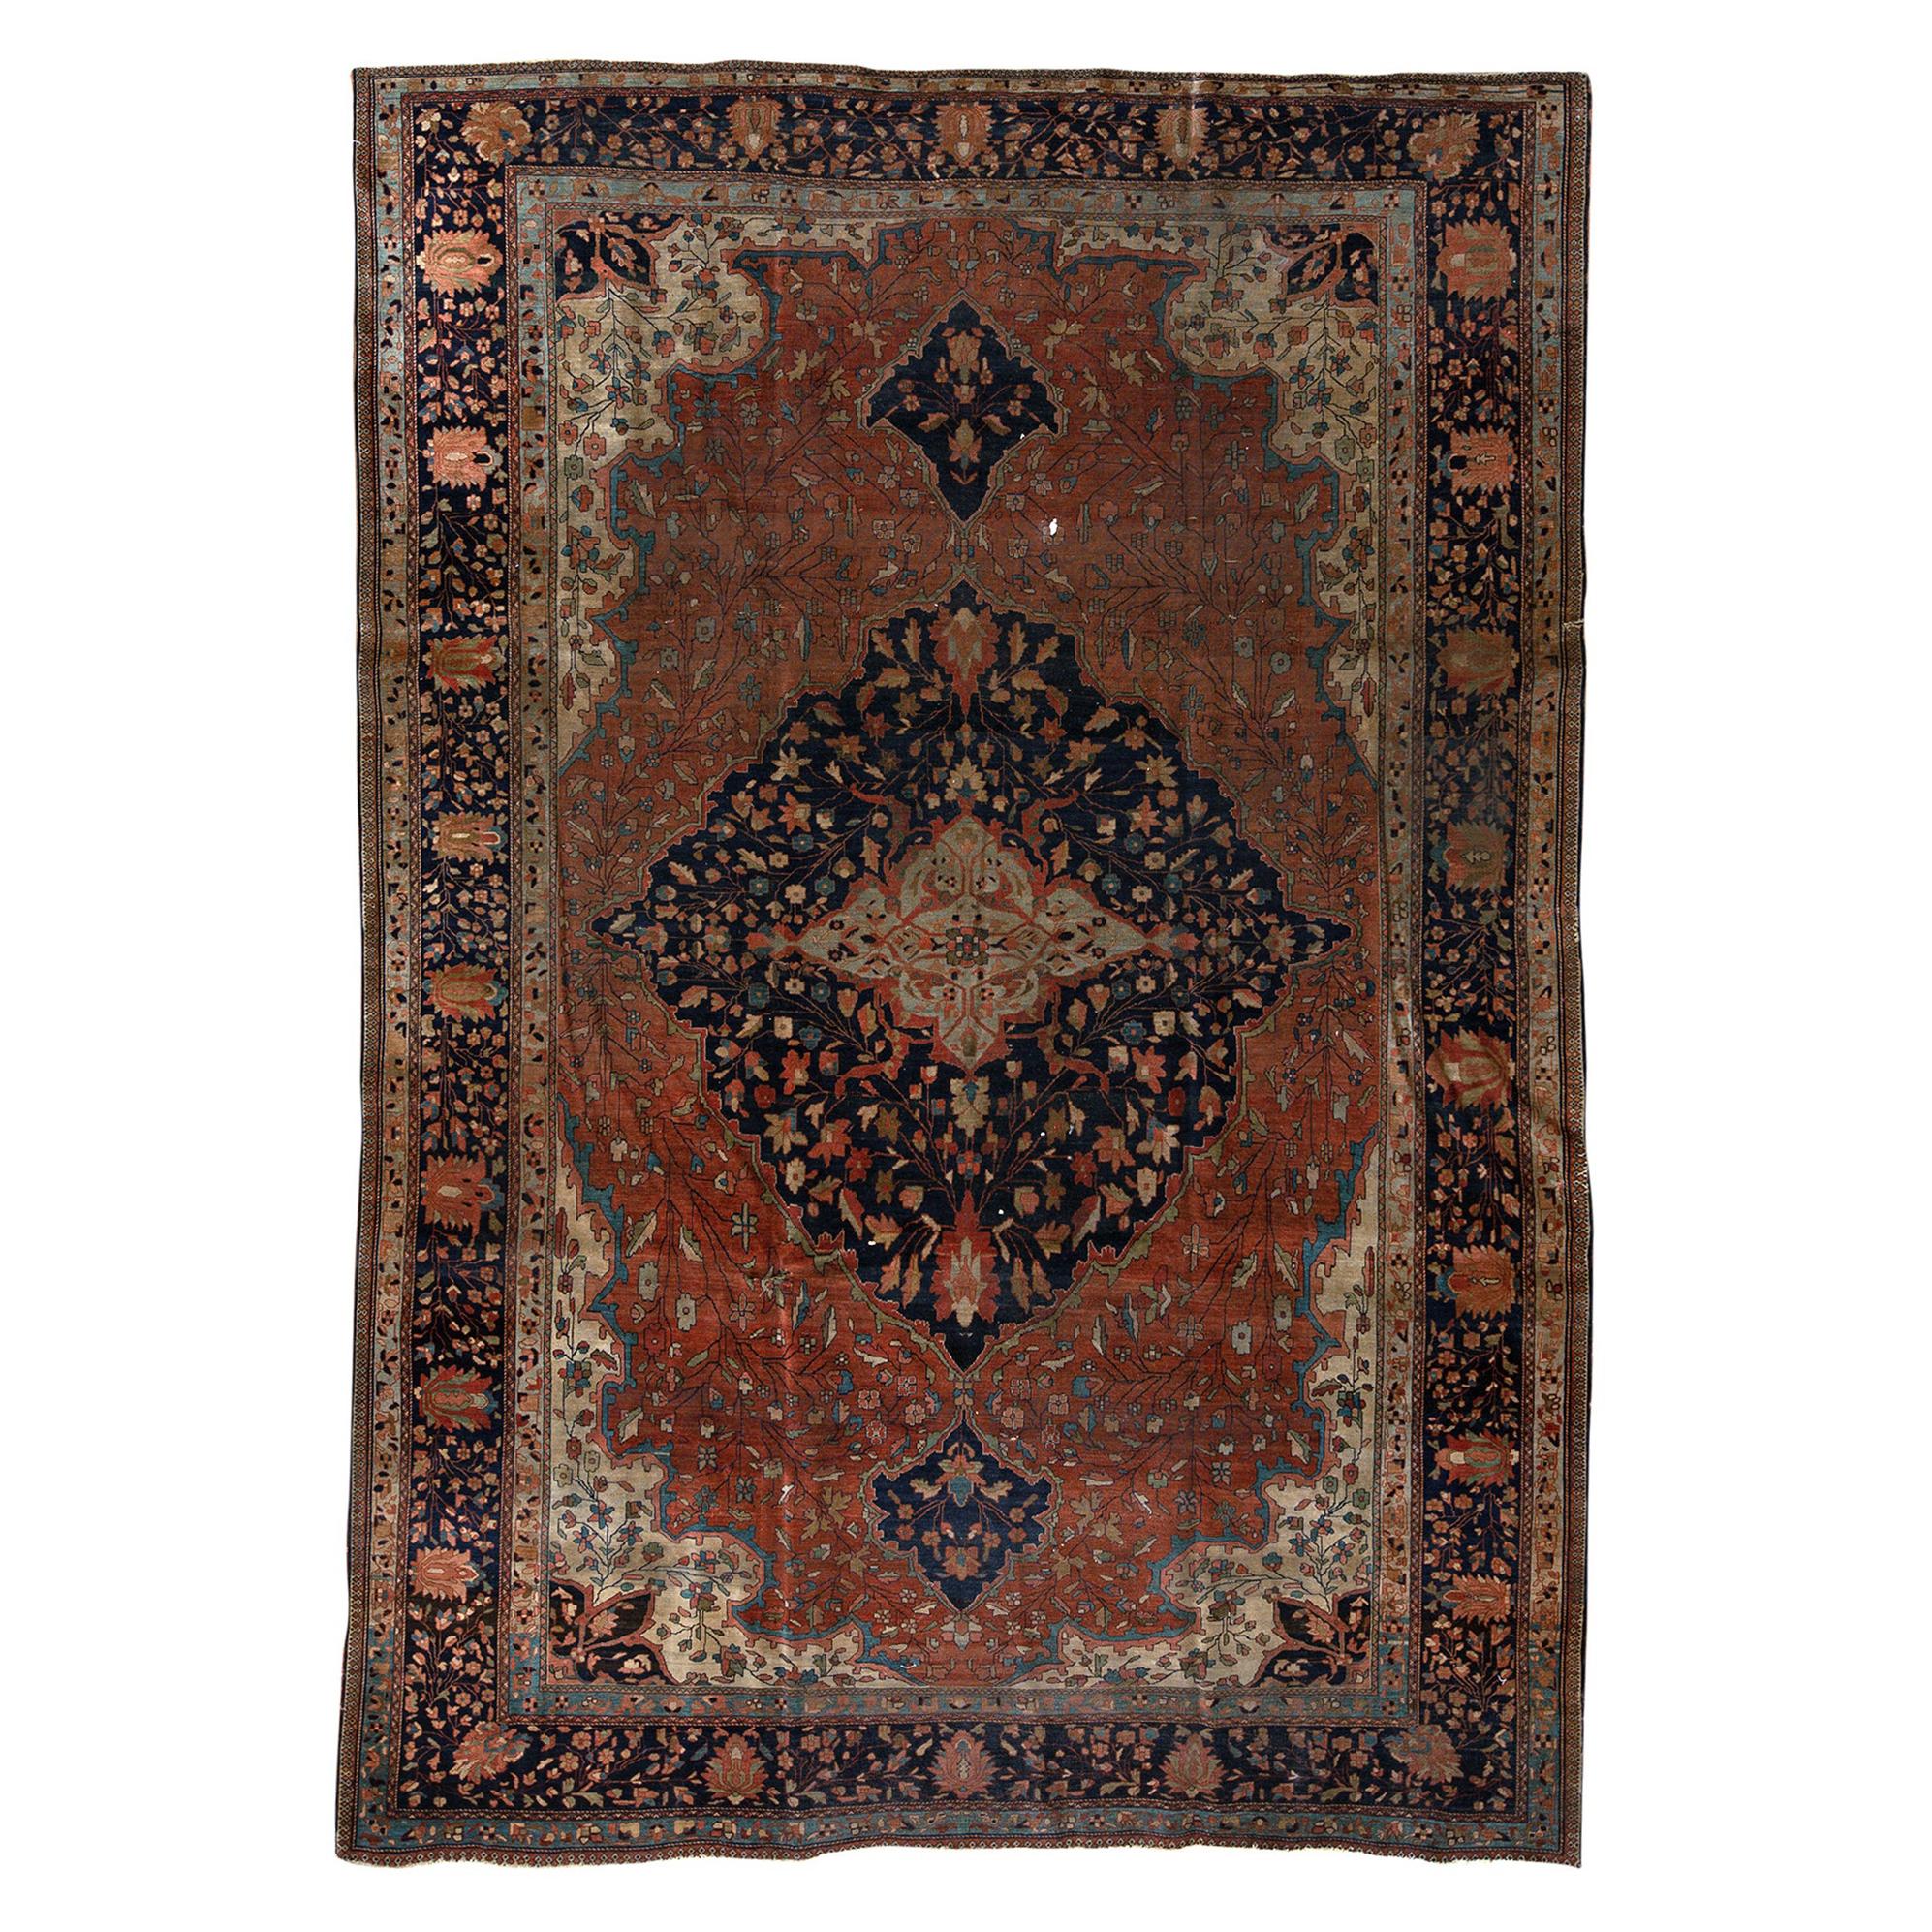   Ancien tapis persan traditionnel tissé à la main de luxe en laine rouille/bleu marine